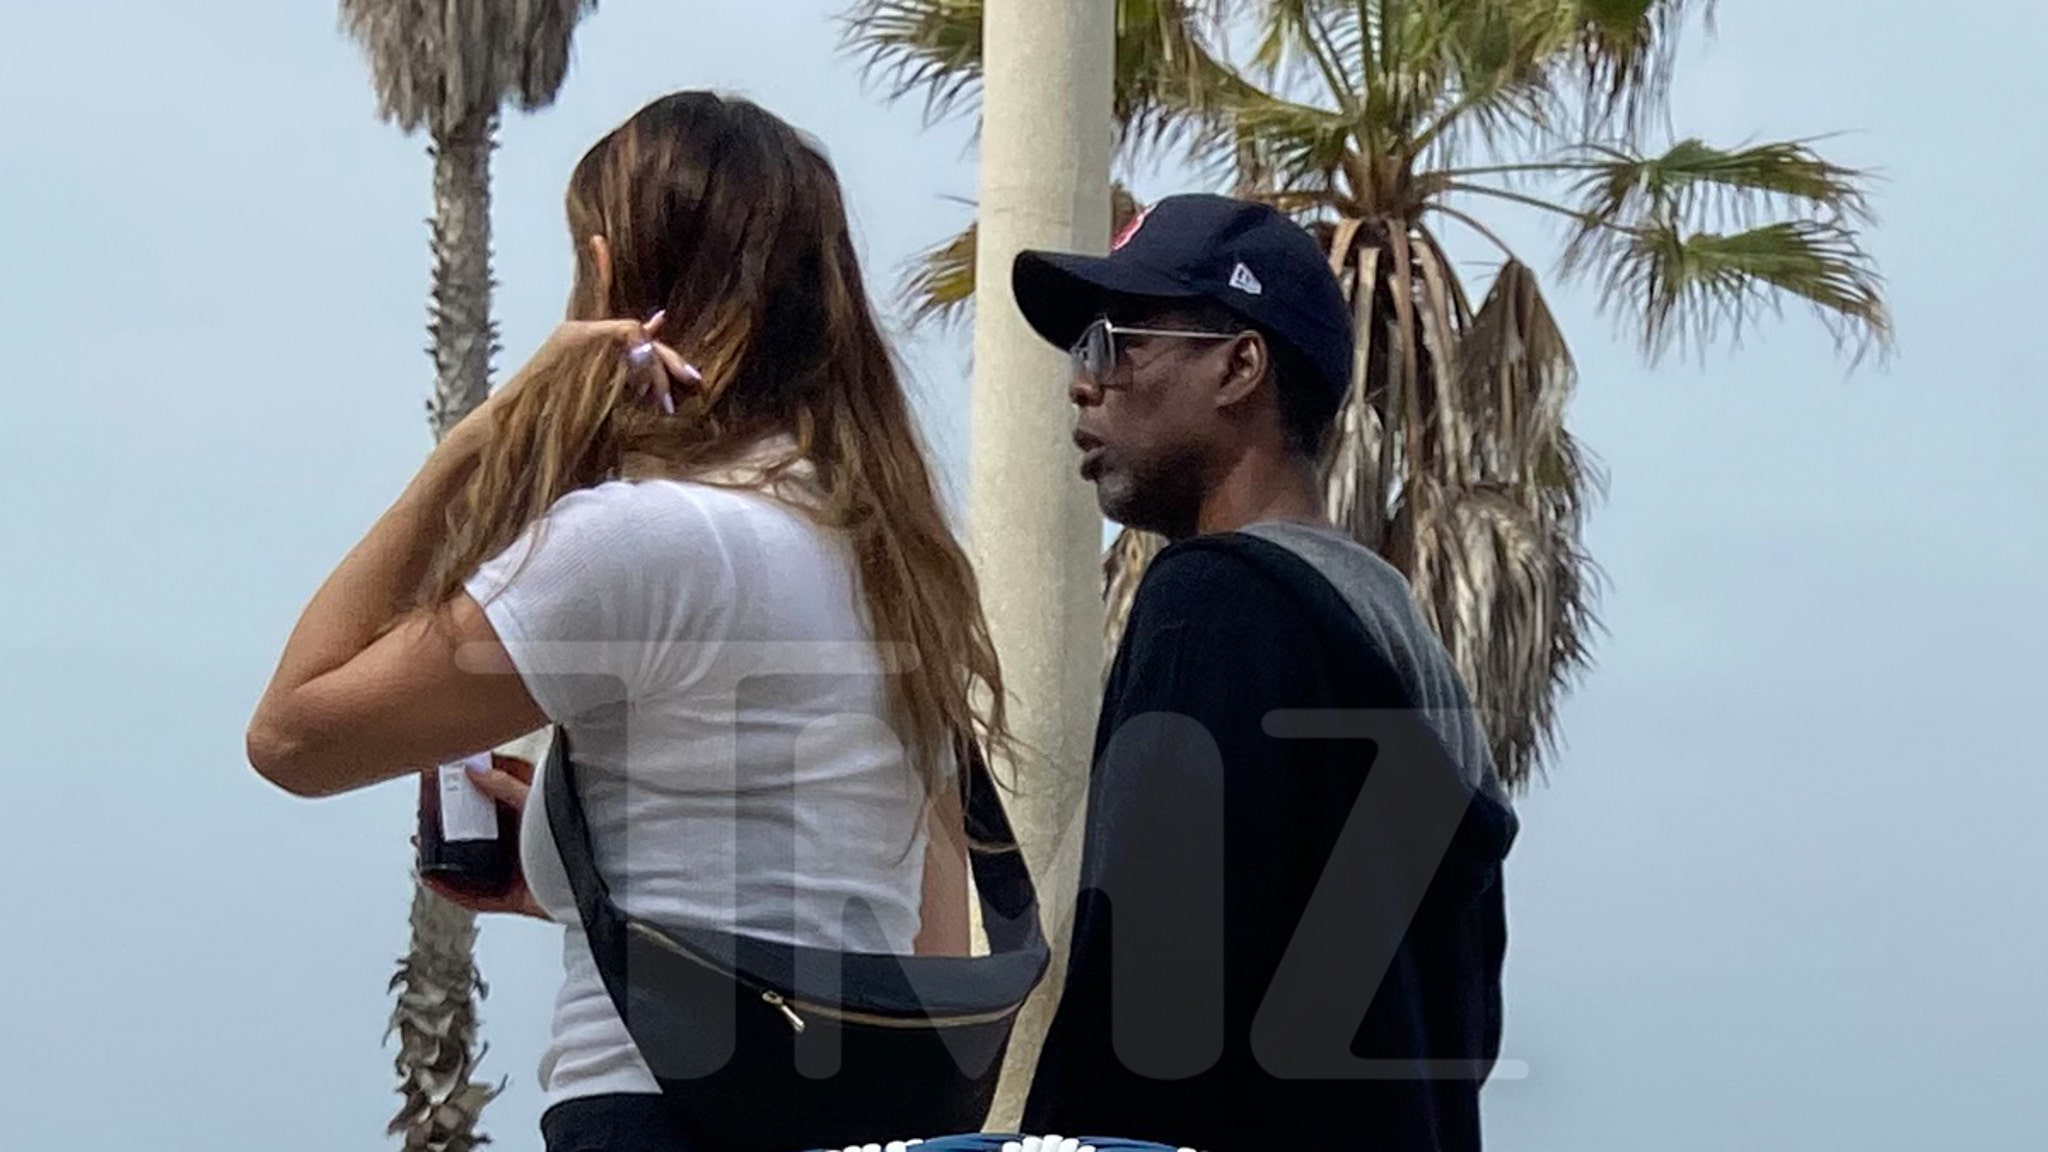 Chris Rock và Like Bell Out trong một chuyến dã ngoại ở Santa Monica, cặp đôi trông khá nghiêm túc